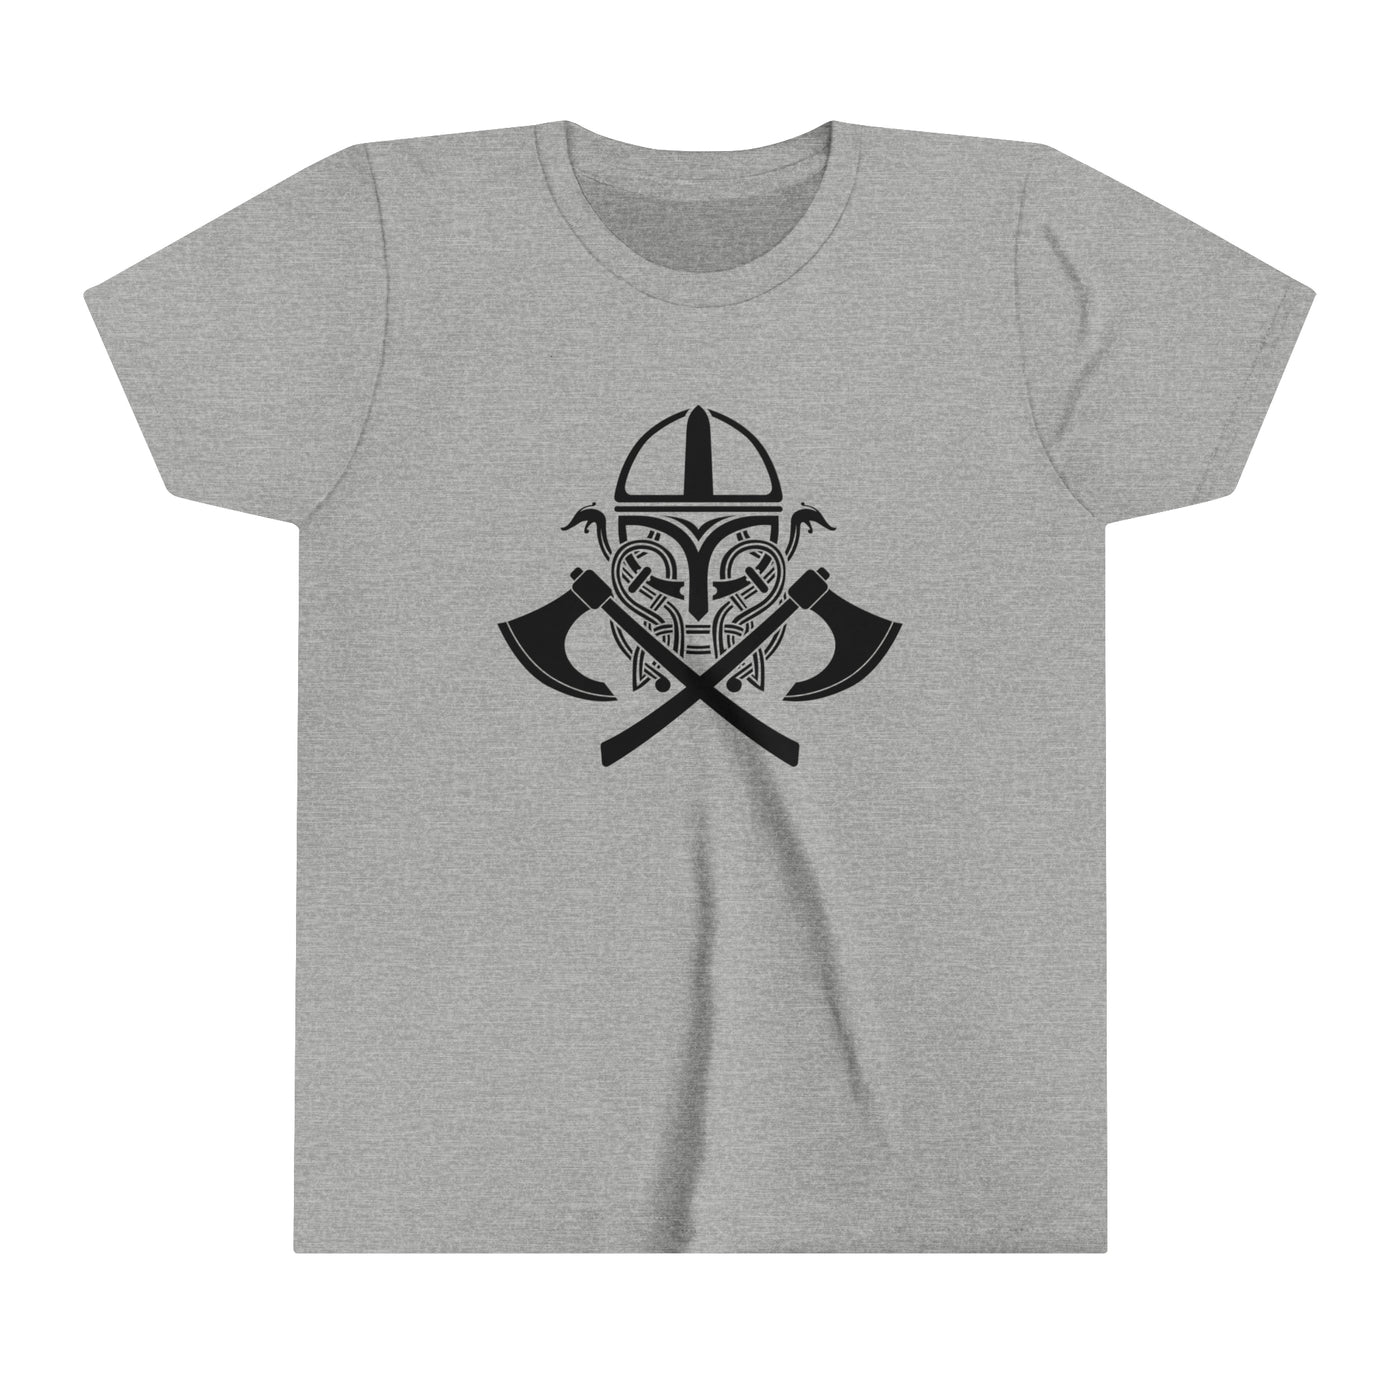 Viking Battle Gear Kids T-Shirt